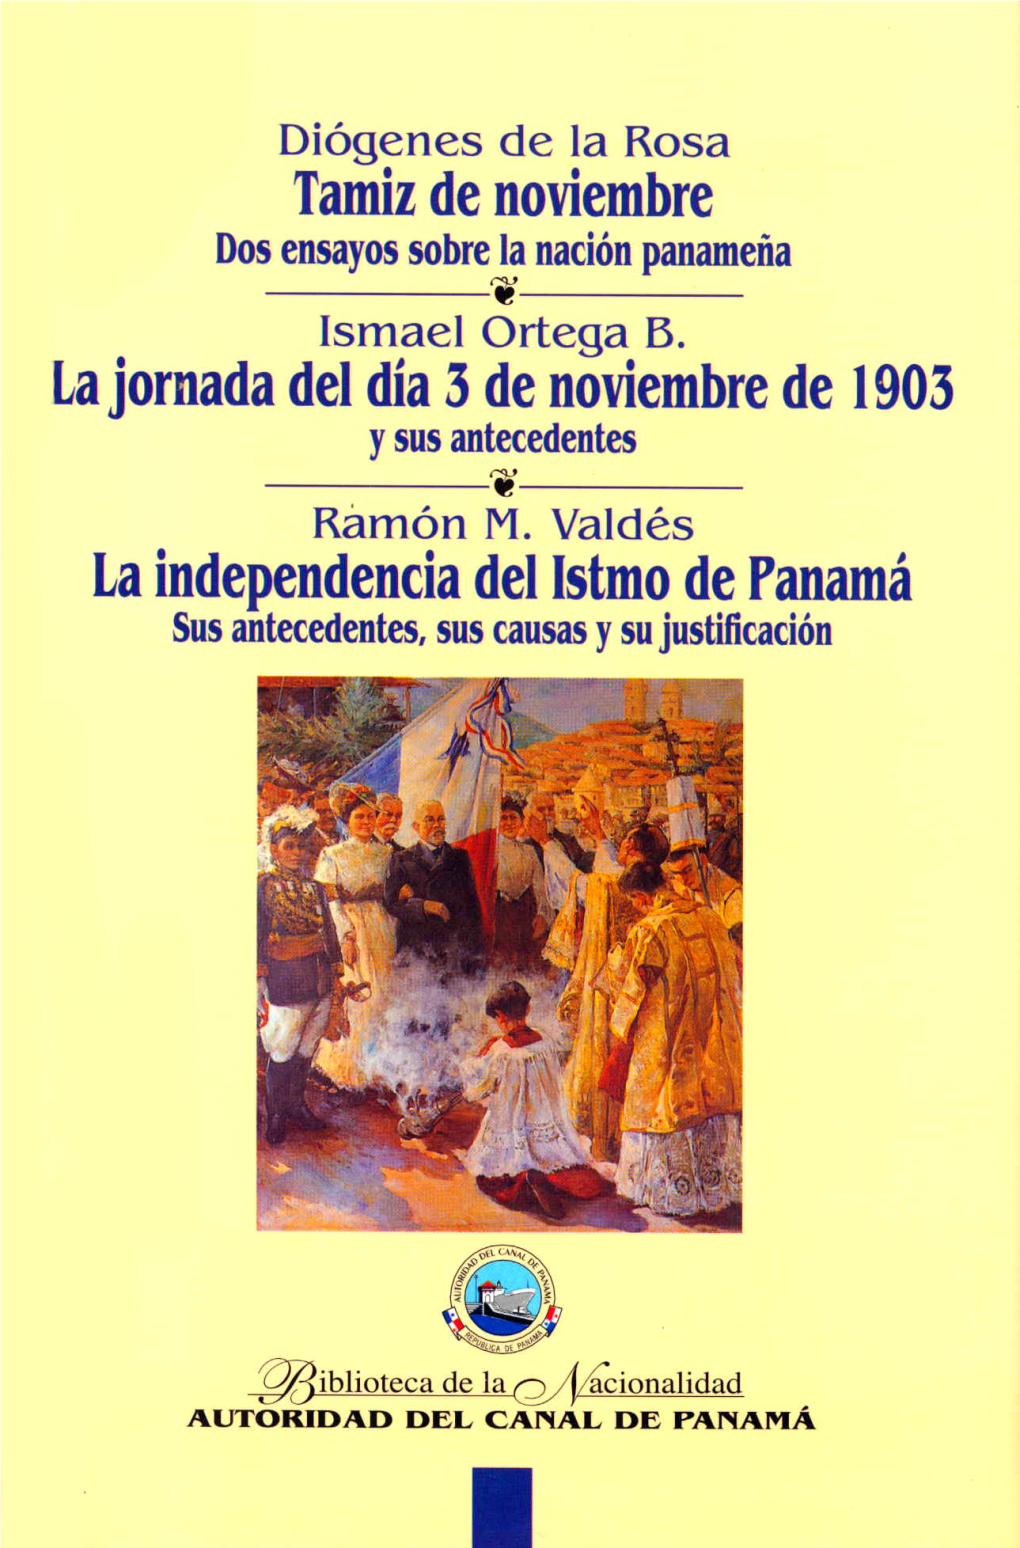 Dos Ensayos Sobre La Nación Panameña/Diógenes De La Rosa.— Panamá: Autoridad Del Canal, 1999